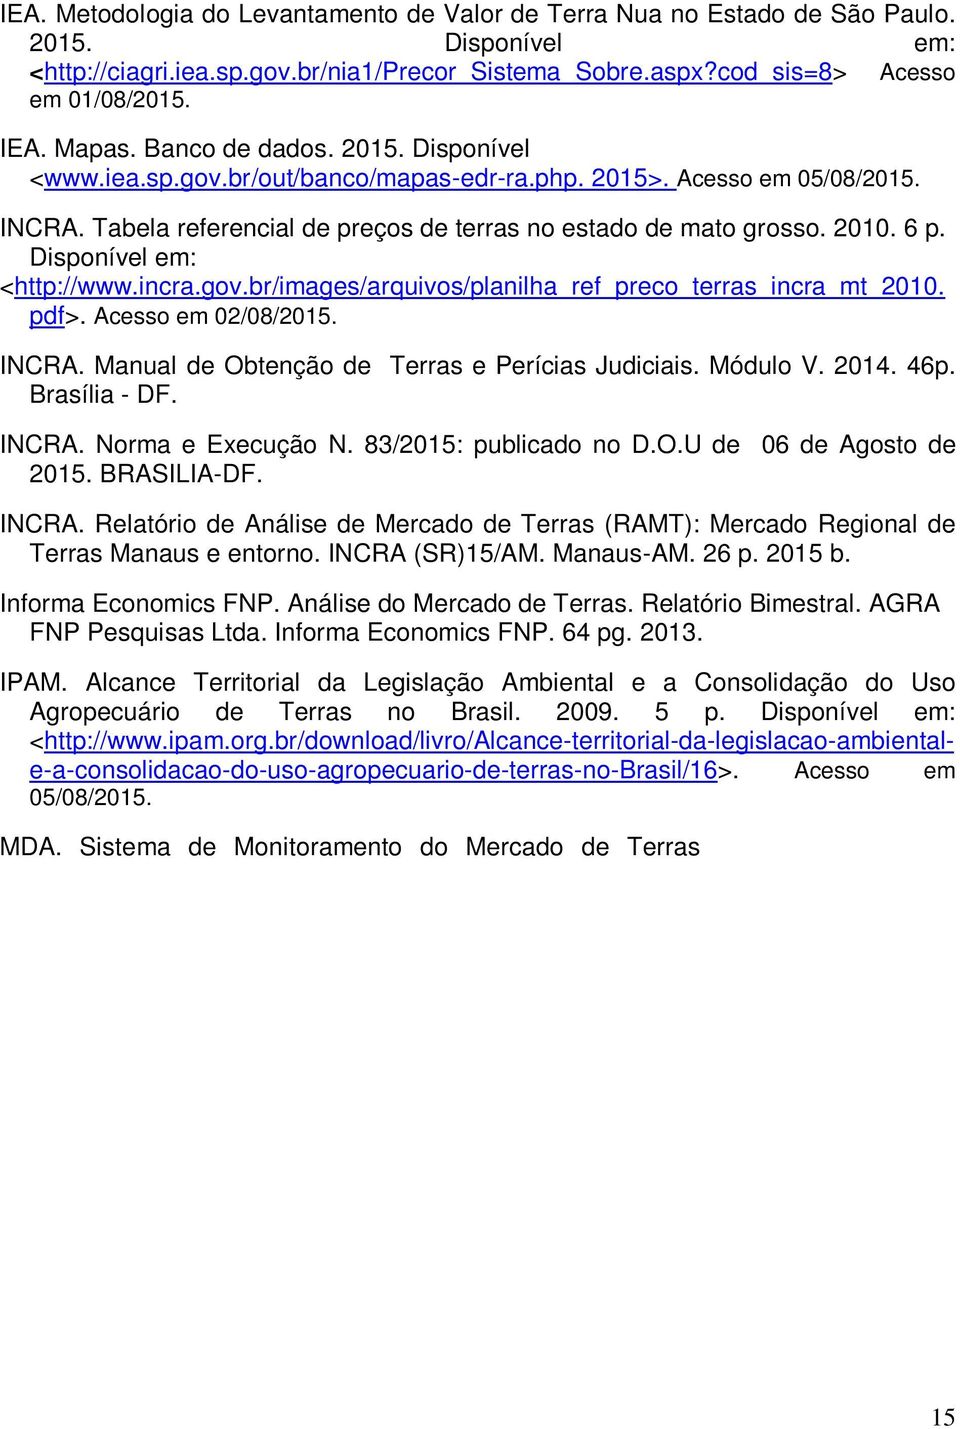 Disponível em: <http://www.incra.gov.br/images/arquivos/planilha_ref_preco_terras_incra_mt_2010. pdf>. Acesso em 02/08/2015. INCRA. Manual de Obtenção de Terras e Perícias Judiciais. Módulo V. 2014.